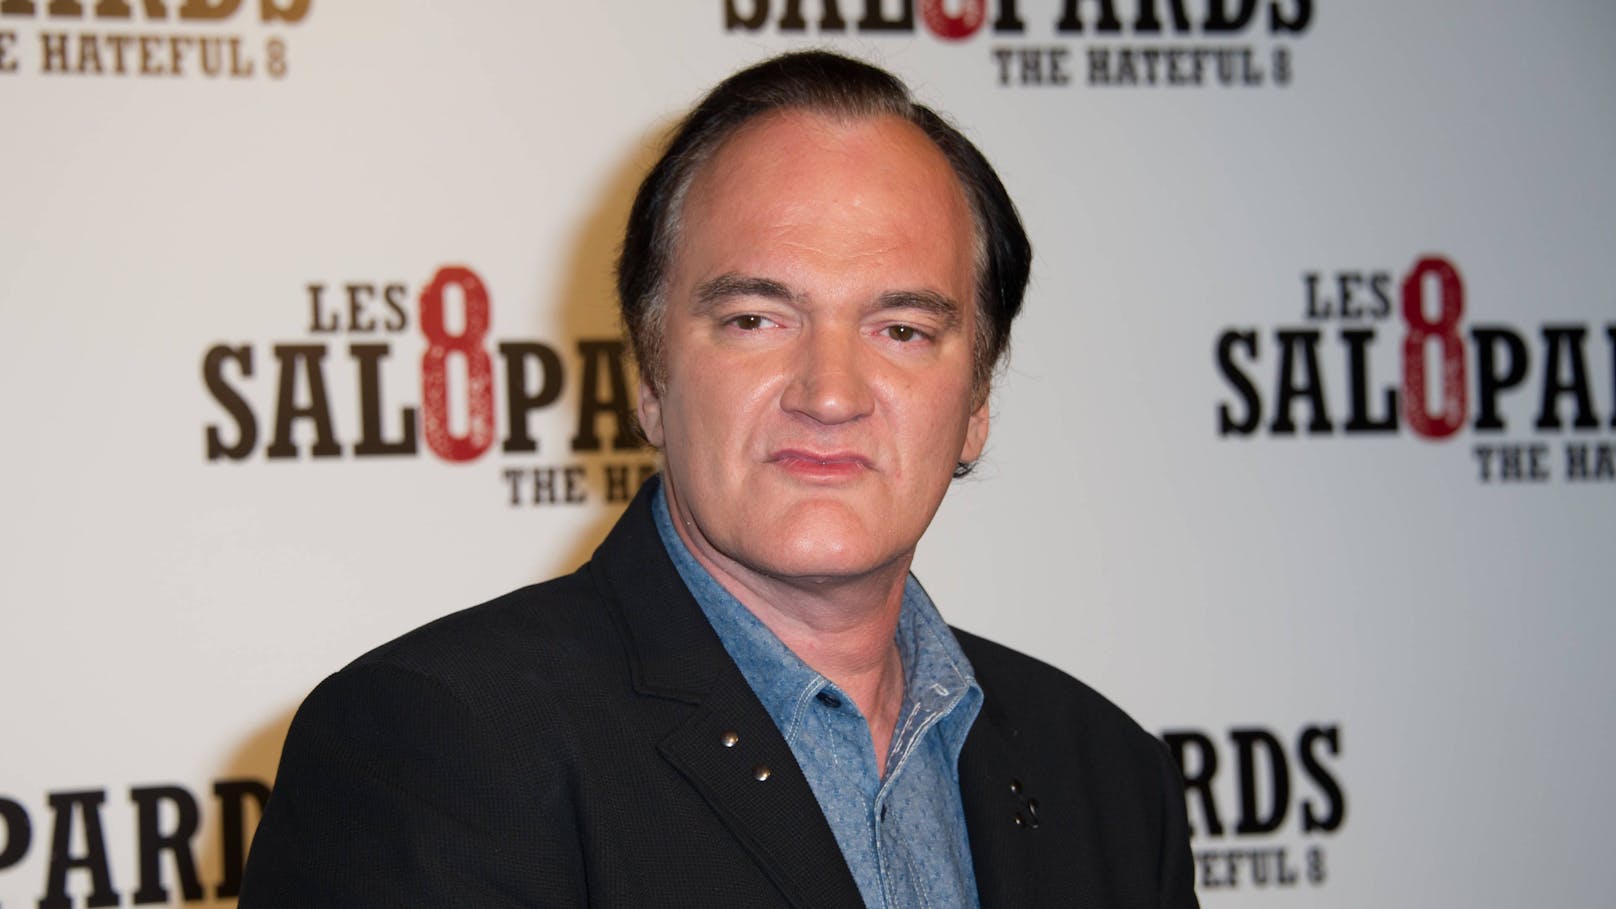 In letztem Tarantino-Film spielt ER die Hauptrolle